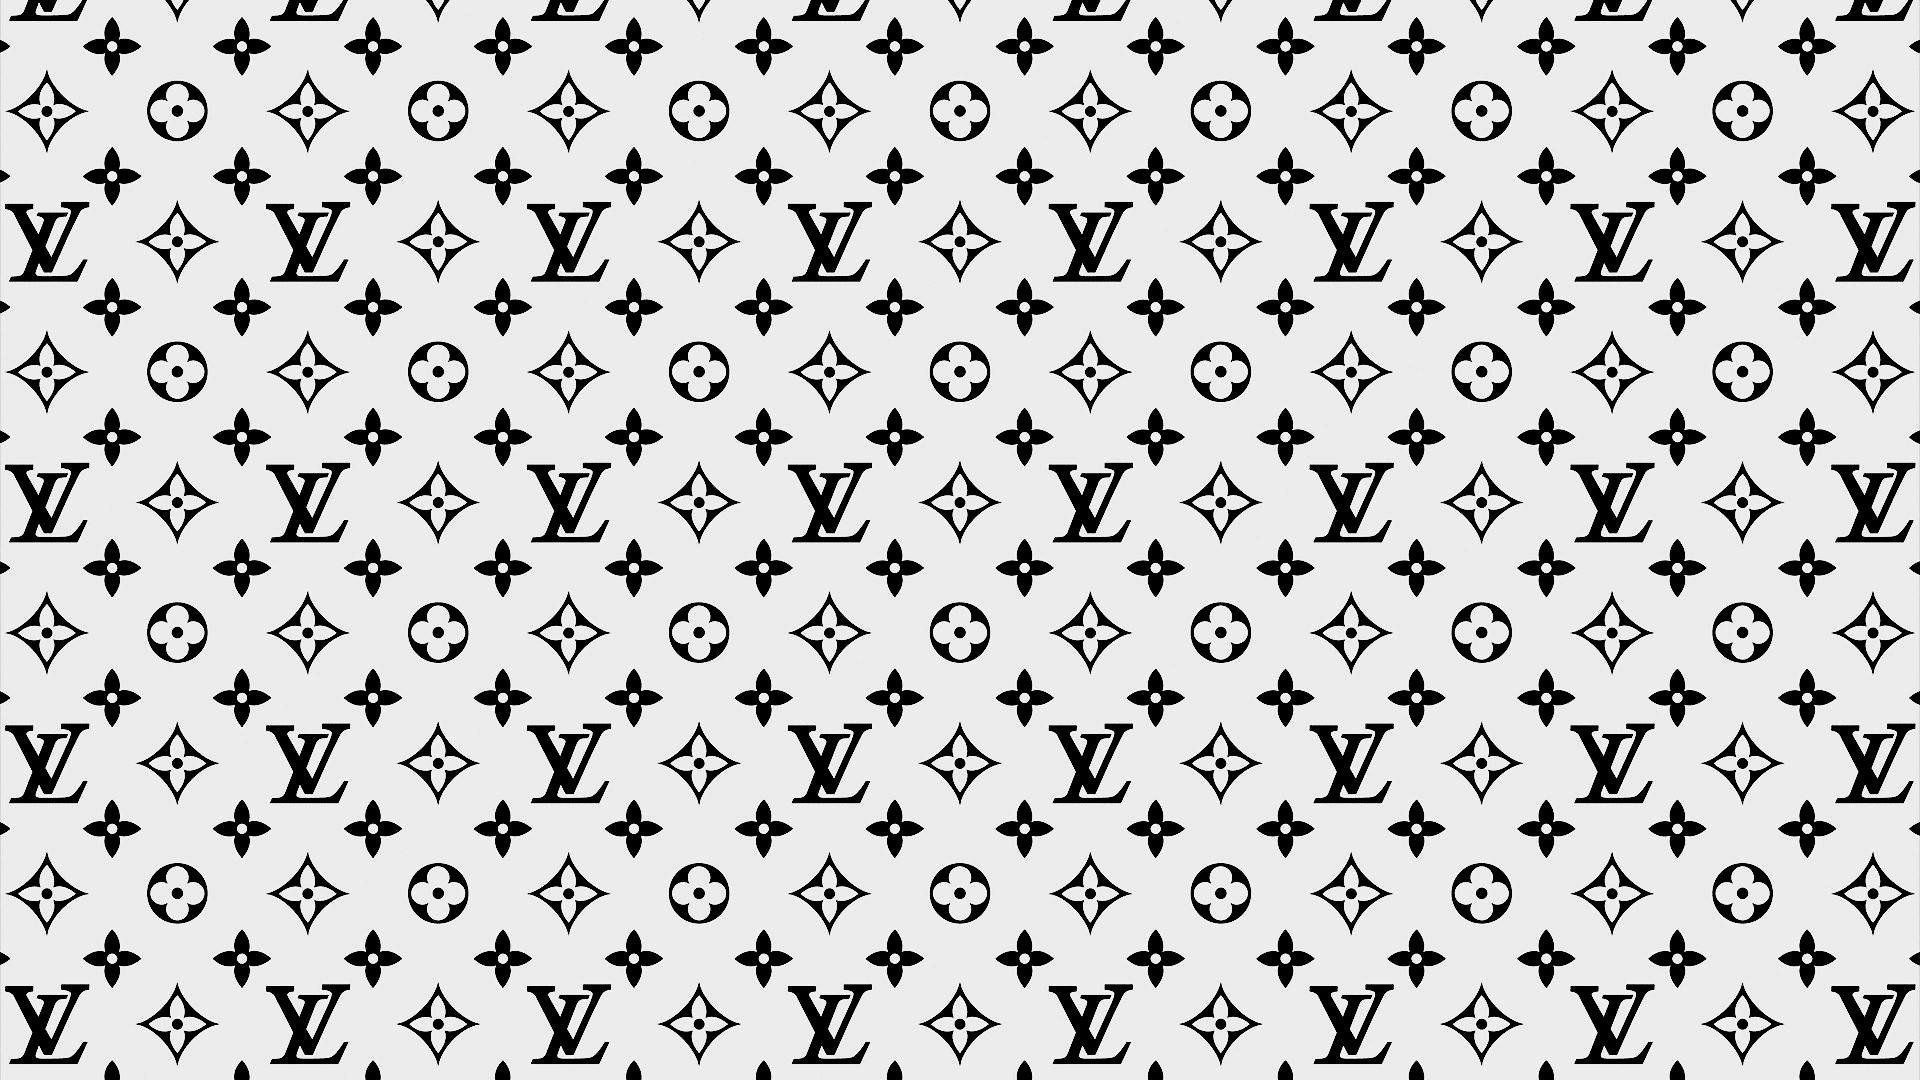 Louis Vuitton Supreme Wallpapers sẽ tạo nên nét độc đáo và sáng tạo cho điện thoại di động của bạn. Tận hưởng sự thông minh và mô phỏng của các thiết kế này đến từ thương hiệu Louis Vuitton và Supreme. Cùng ngắm nhìn hình nền này để có một trải nghiệm thật đáng nhớ!